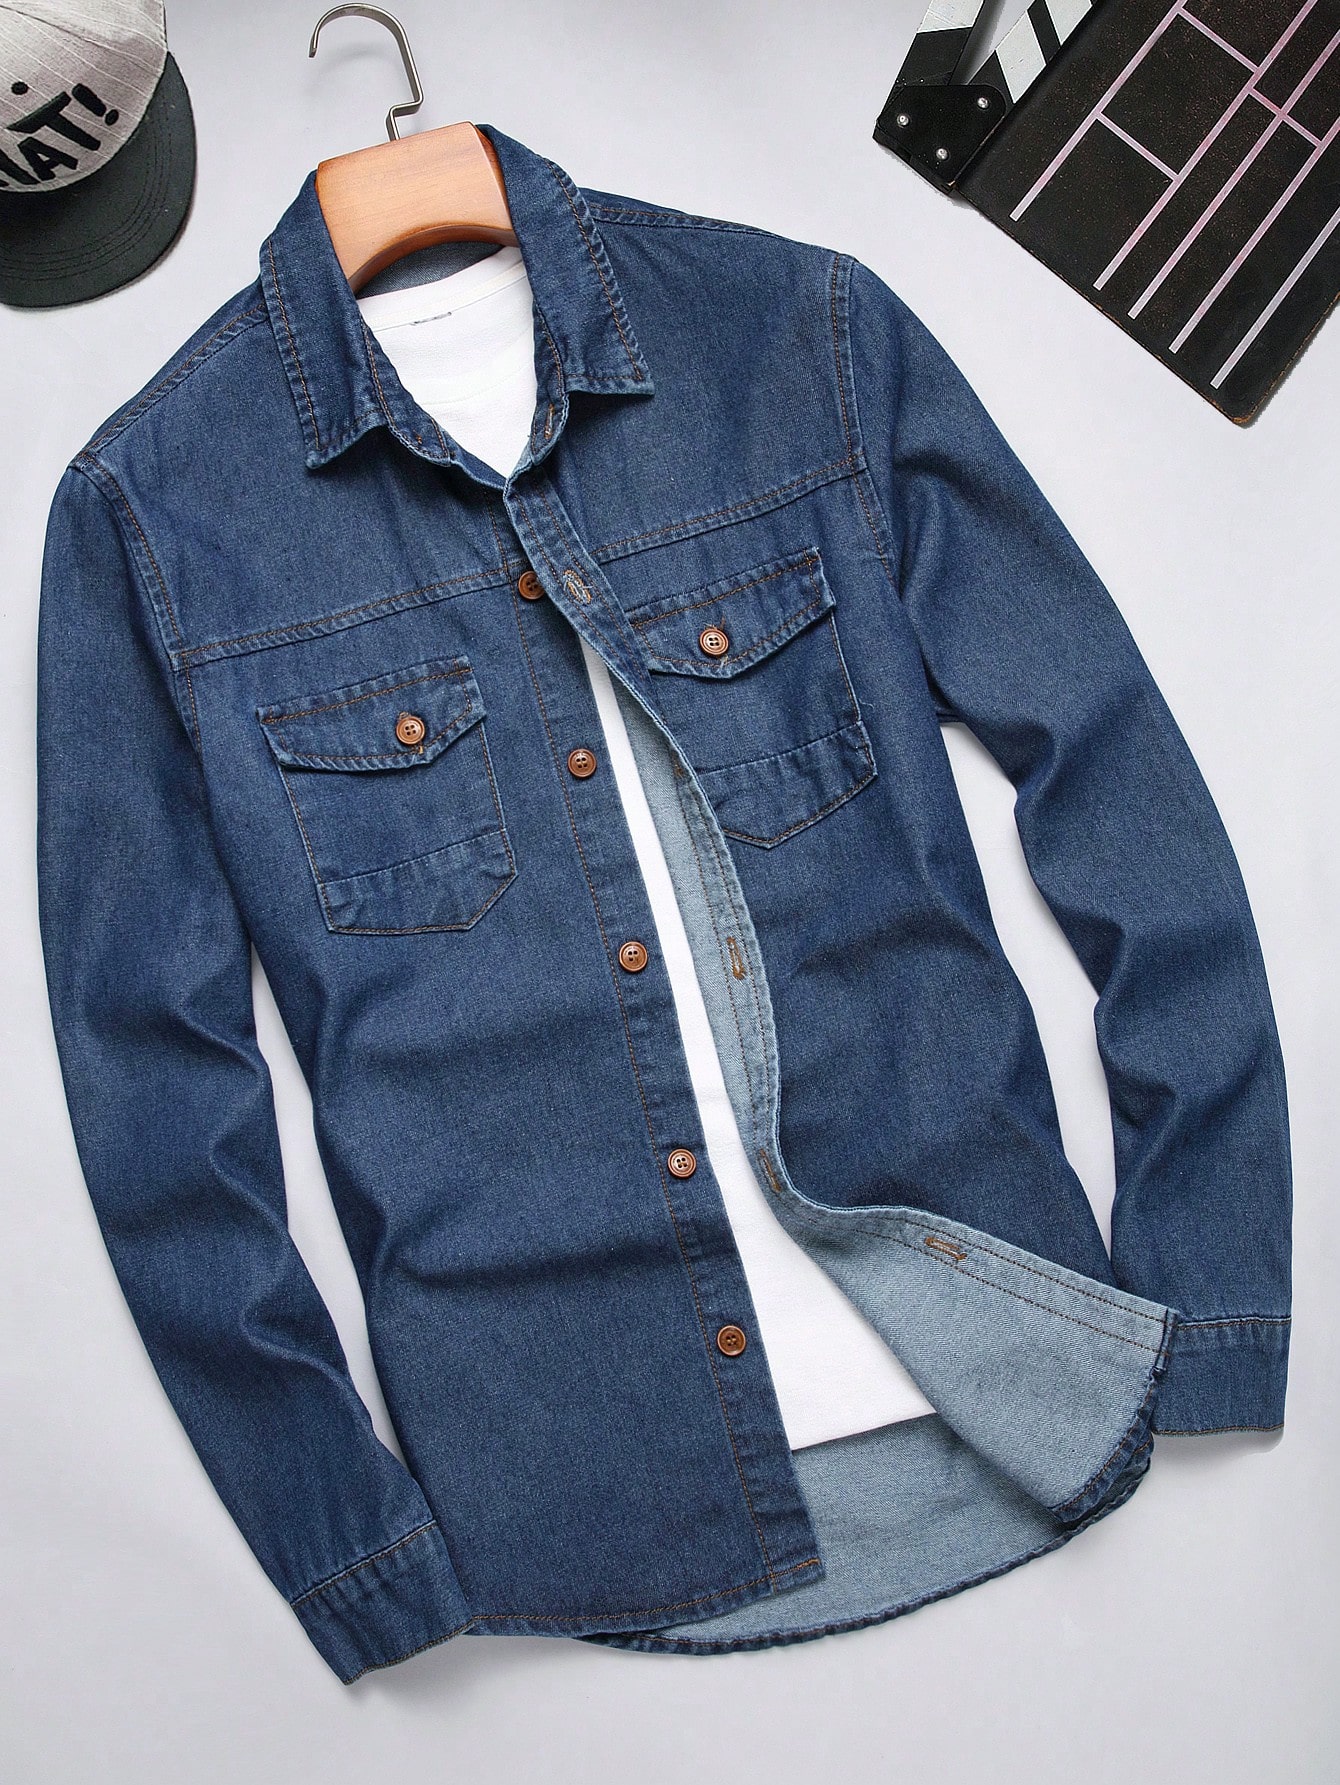 Мужская джинсовая рубашка с длинными рукавами и карманами на клапане Manfinity Homme, синий джинсовая рубашка мужская с длинным рукавом модная повседневная джинсовая куртка винтажная рубашка из денима весна осень